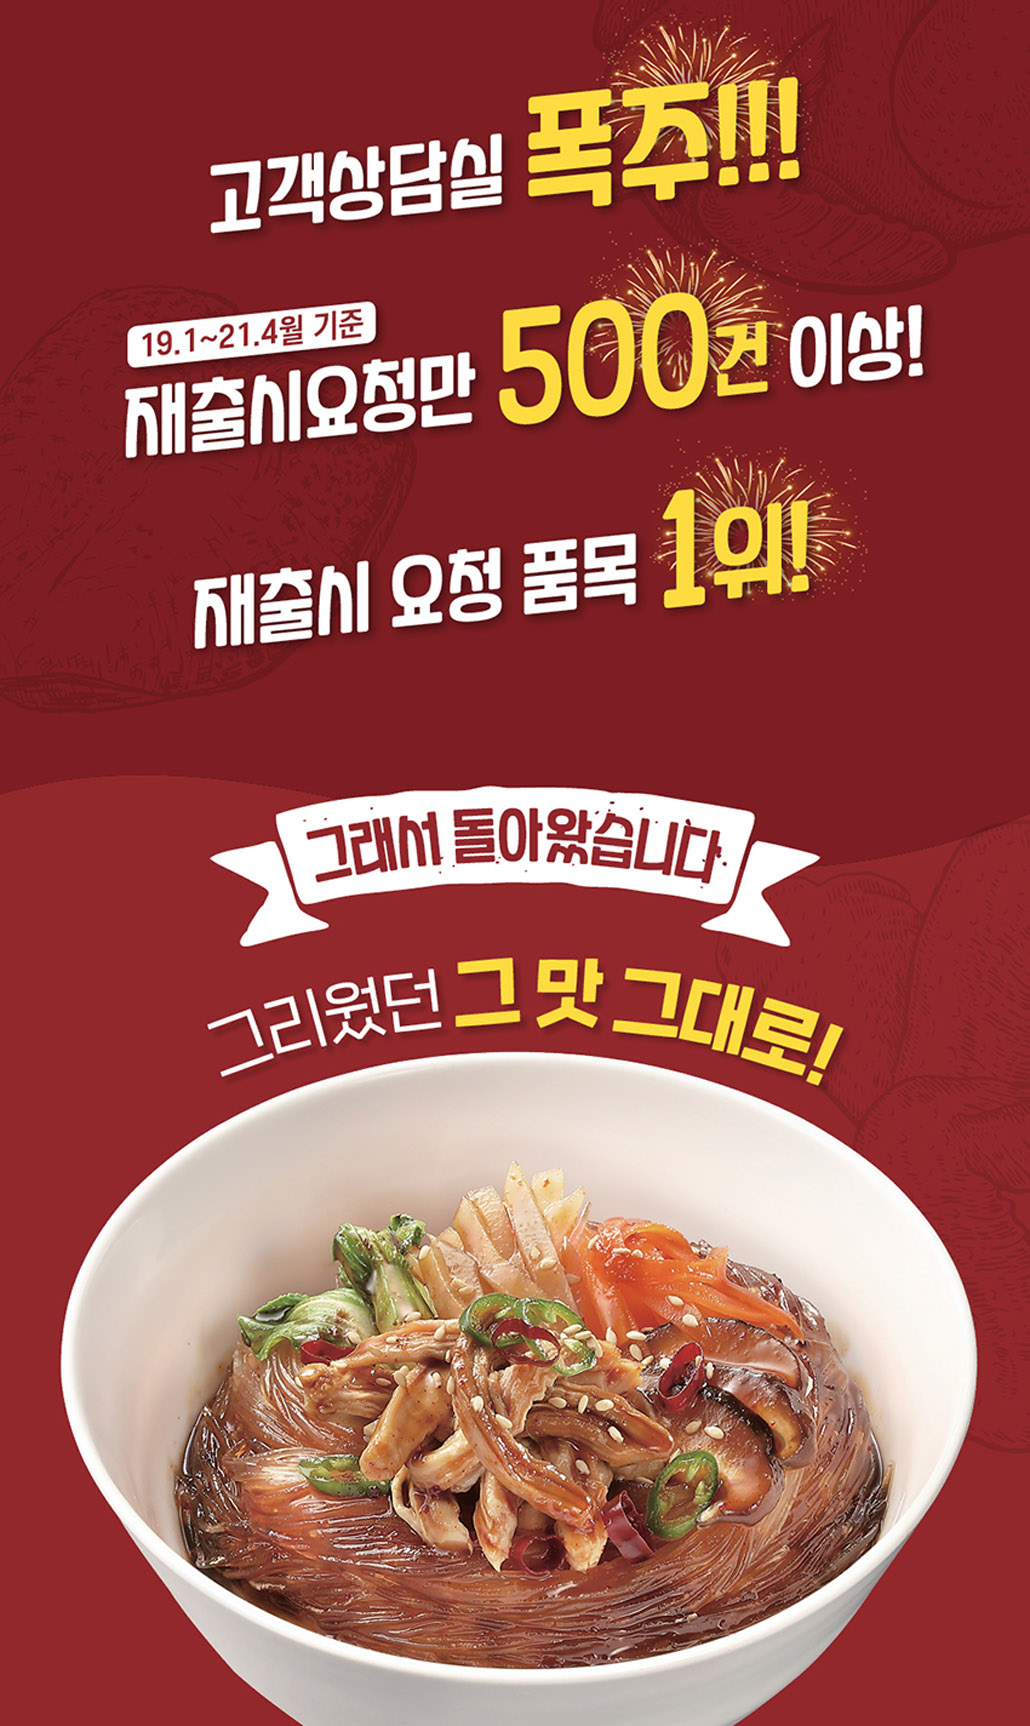 韓國食品-[Ottogi] Cup Noodle [Spicy Steamed Chicken] 43.5g